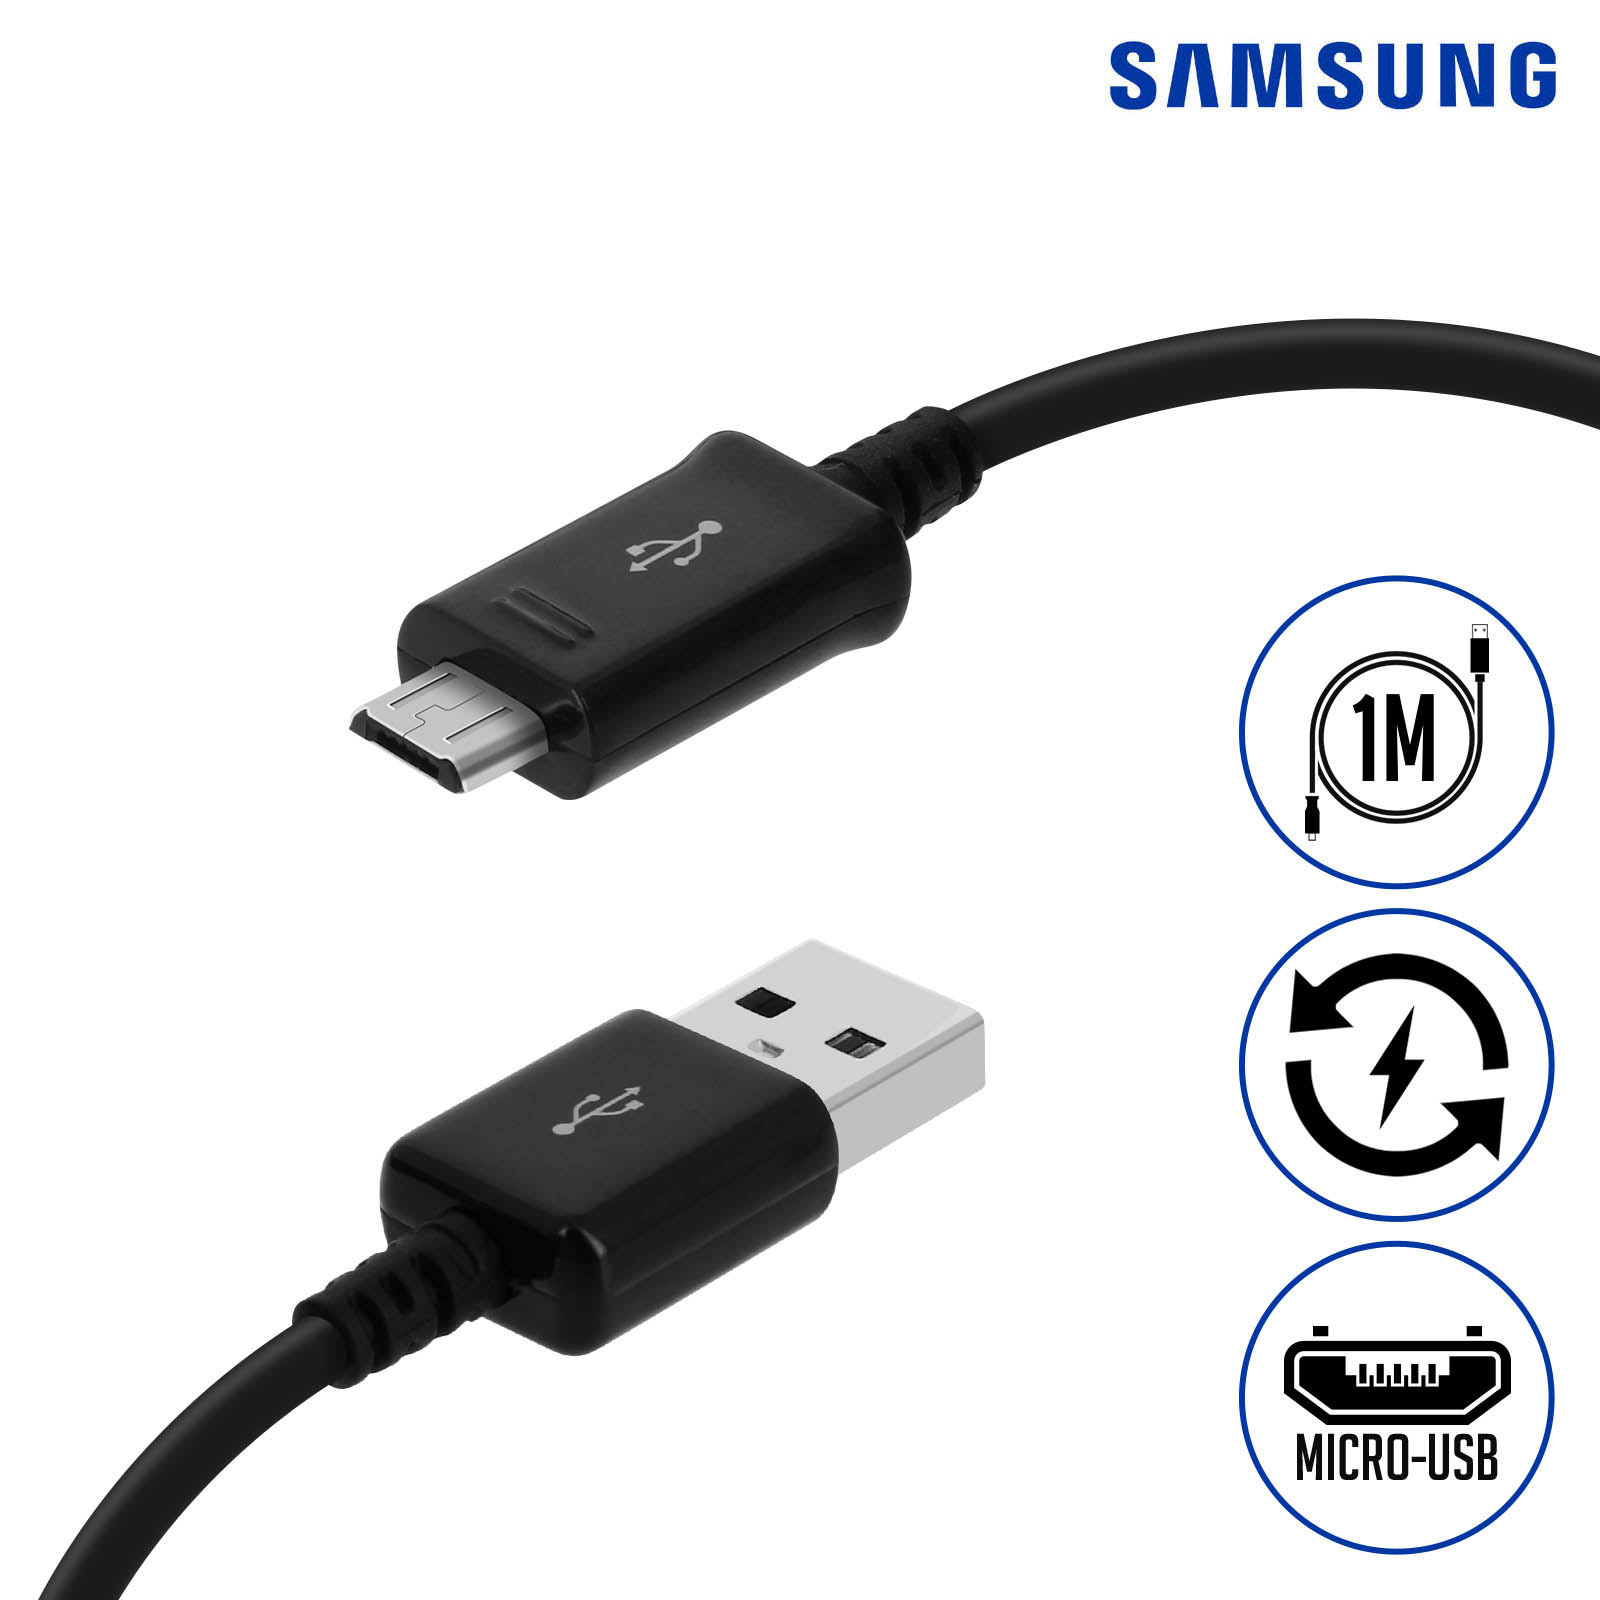 Cable de carga USB del teléfono celular (Micro USB) para el teléfono  Samsungcell